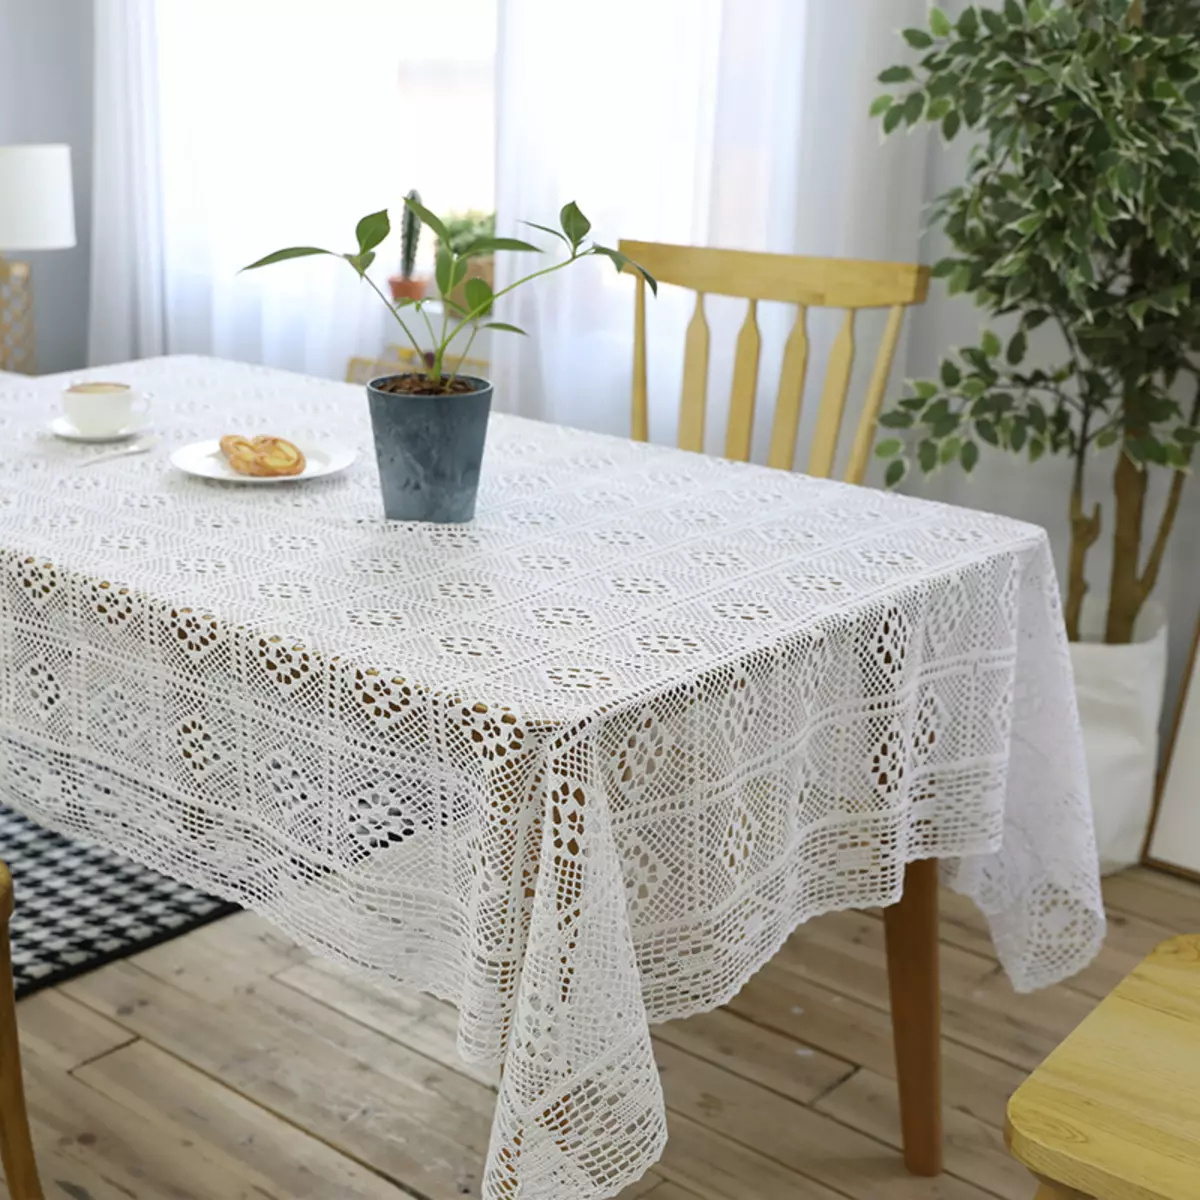 ผ้าปูโต๊ะสีขาว (35 รูป): ผ้าปูโต๊ะสีขาวหิมะบนโต๊ะฝ้ายและอื่น ๆ สีดำและสีขาวและผ้าปูโต๊ะที่สวยงามอื่น ๆ 21608_11